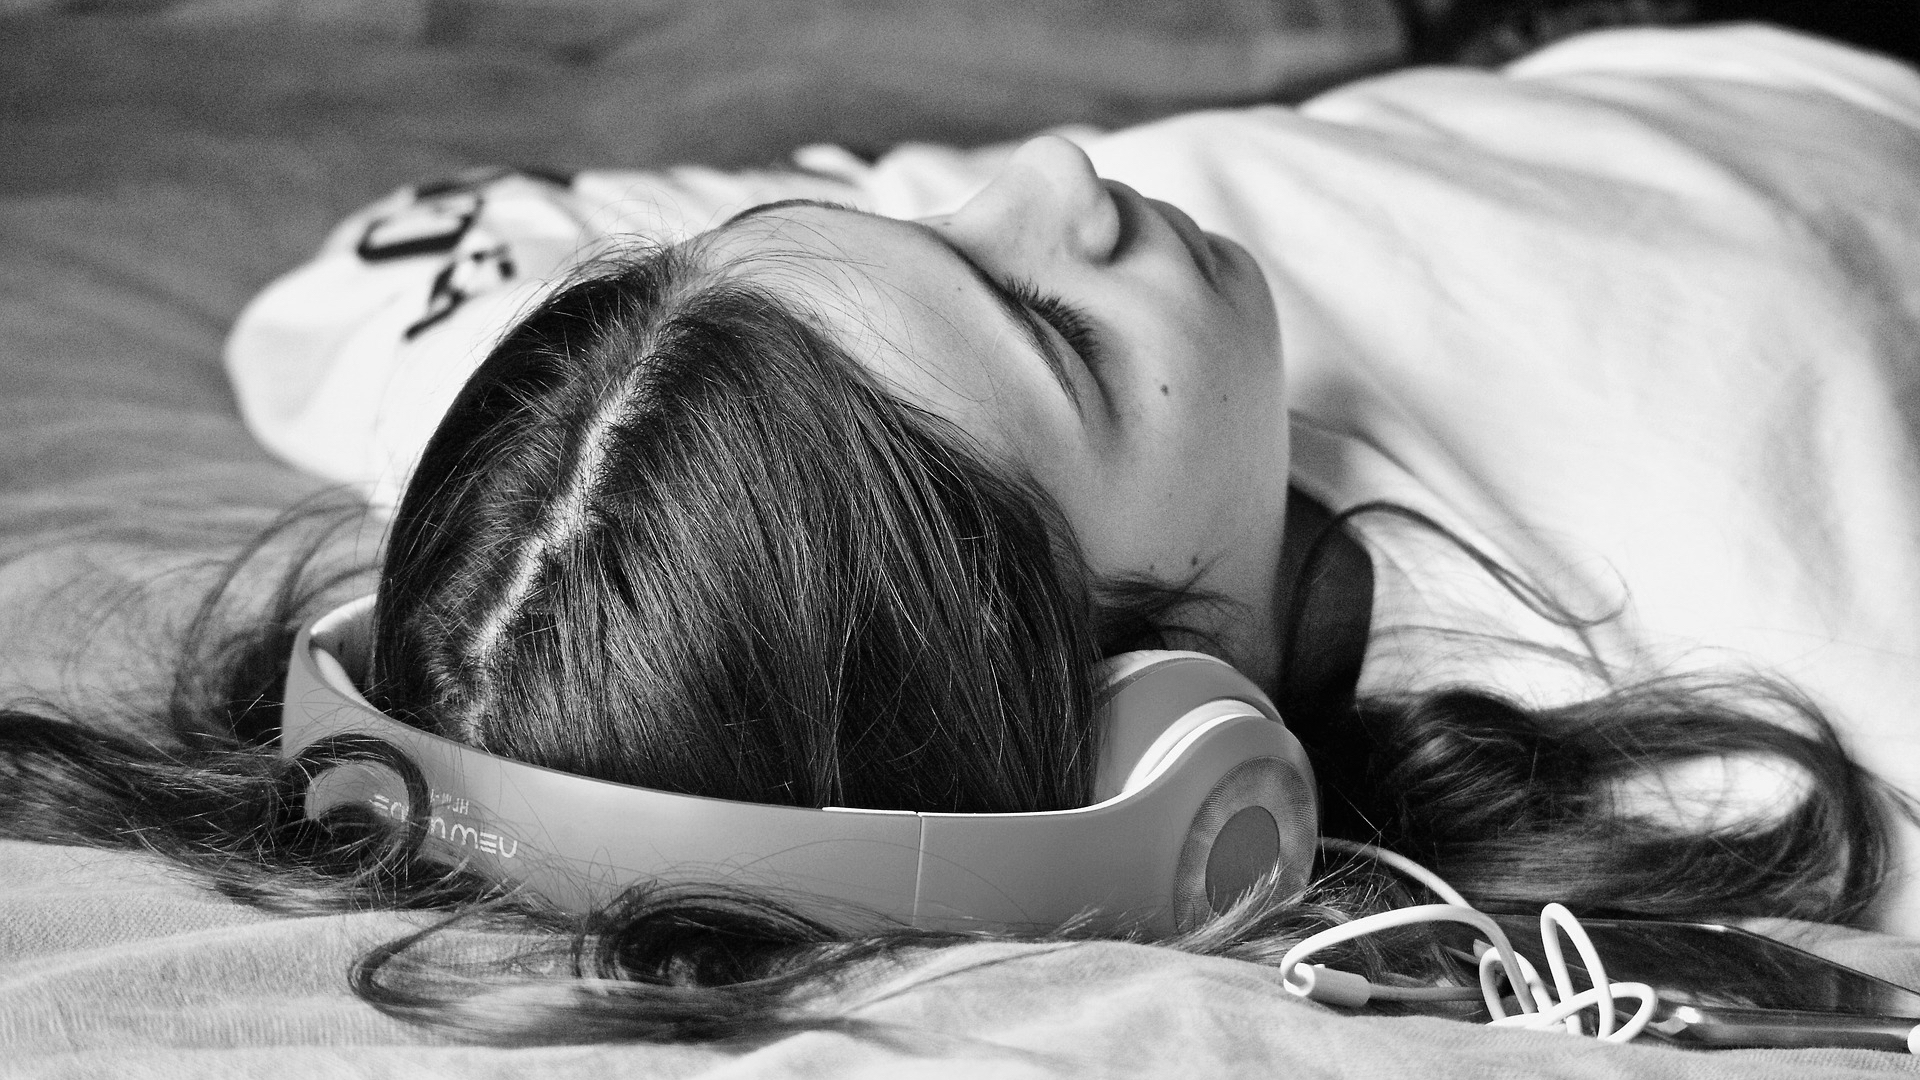 Le bruit blanc peut aider à s'endormir, mais on ne sait toujours pas  pourquoi - Numerama